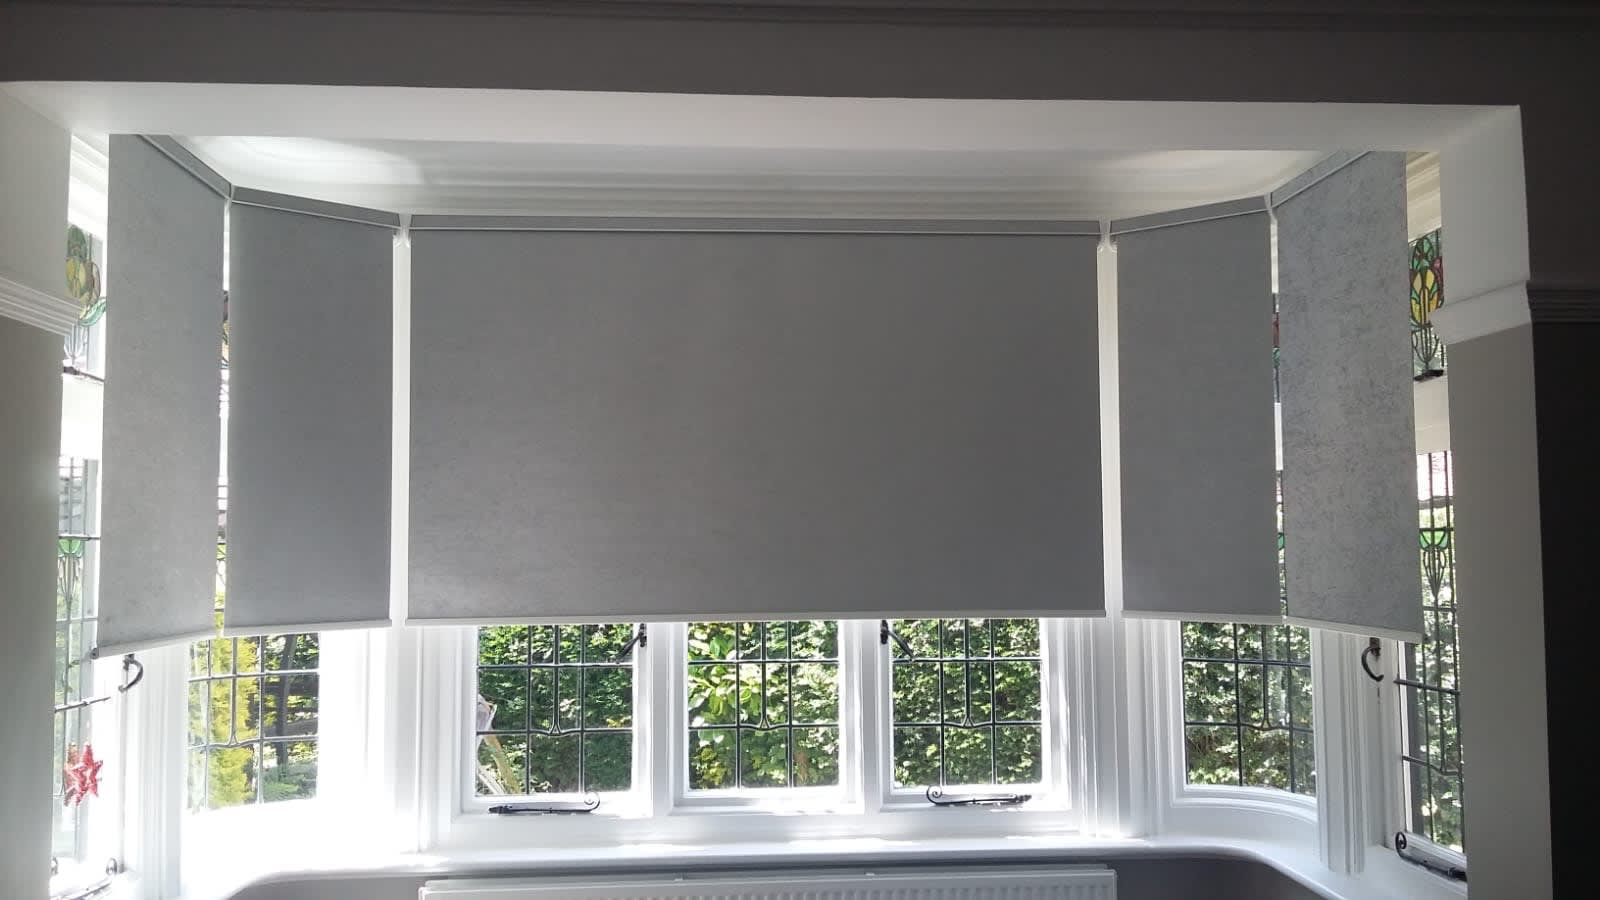 Surrey Blind & Curtain Co Ltd Croydon 01689 843669